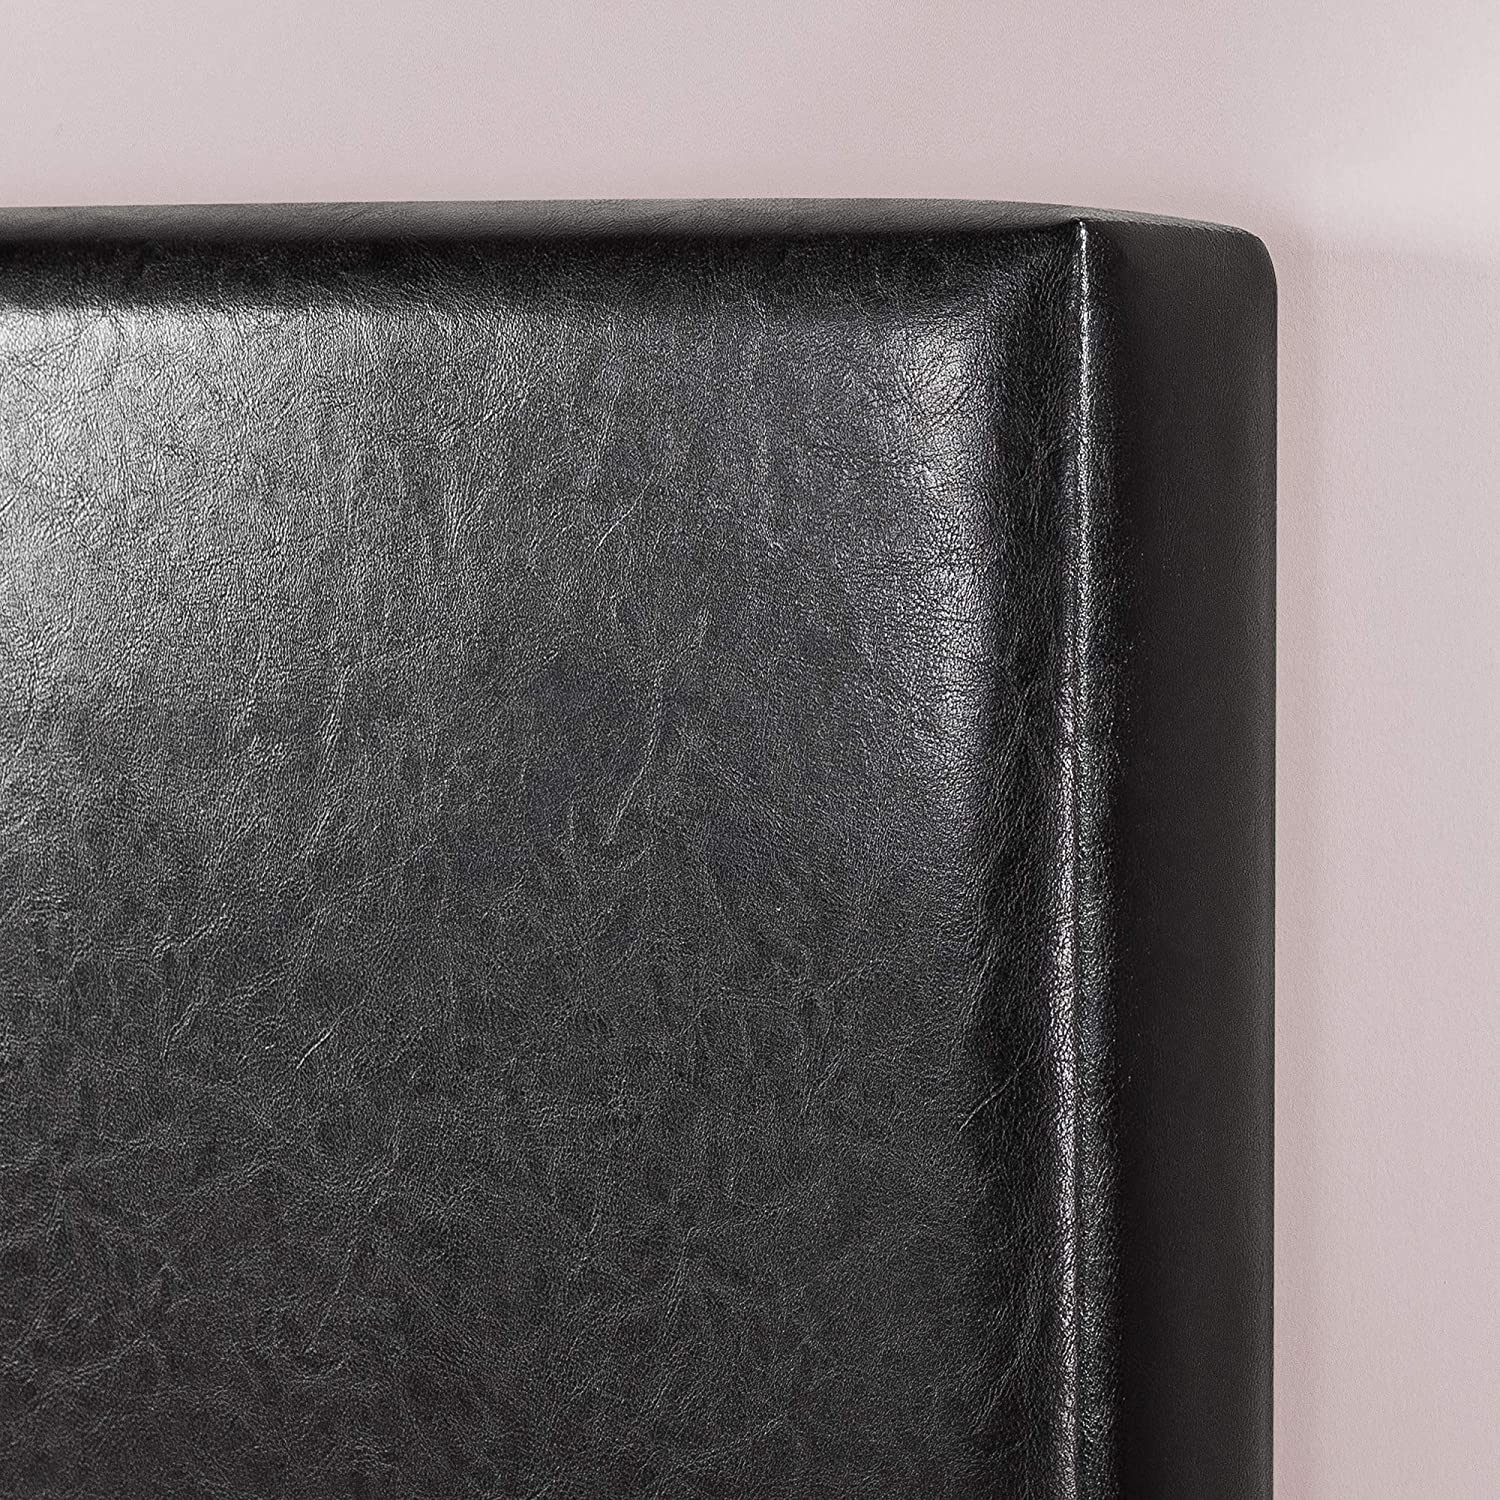 ZINUS Jade Faux Leather Upholstered Platform Bed Frame with Short Headboard, Black